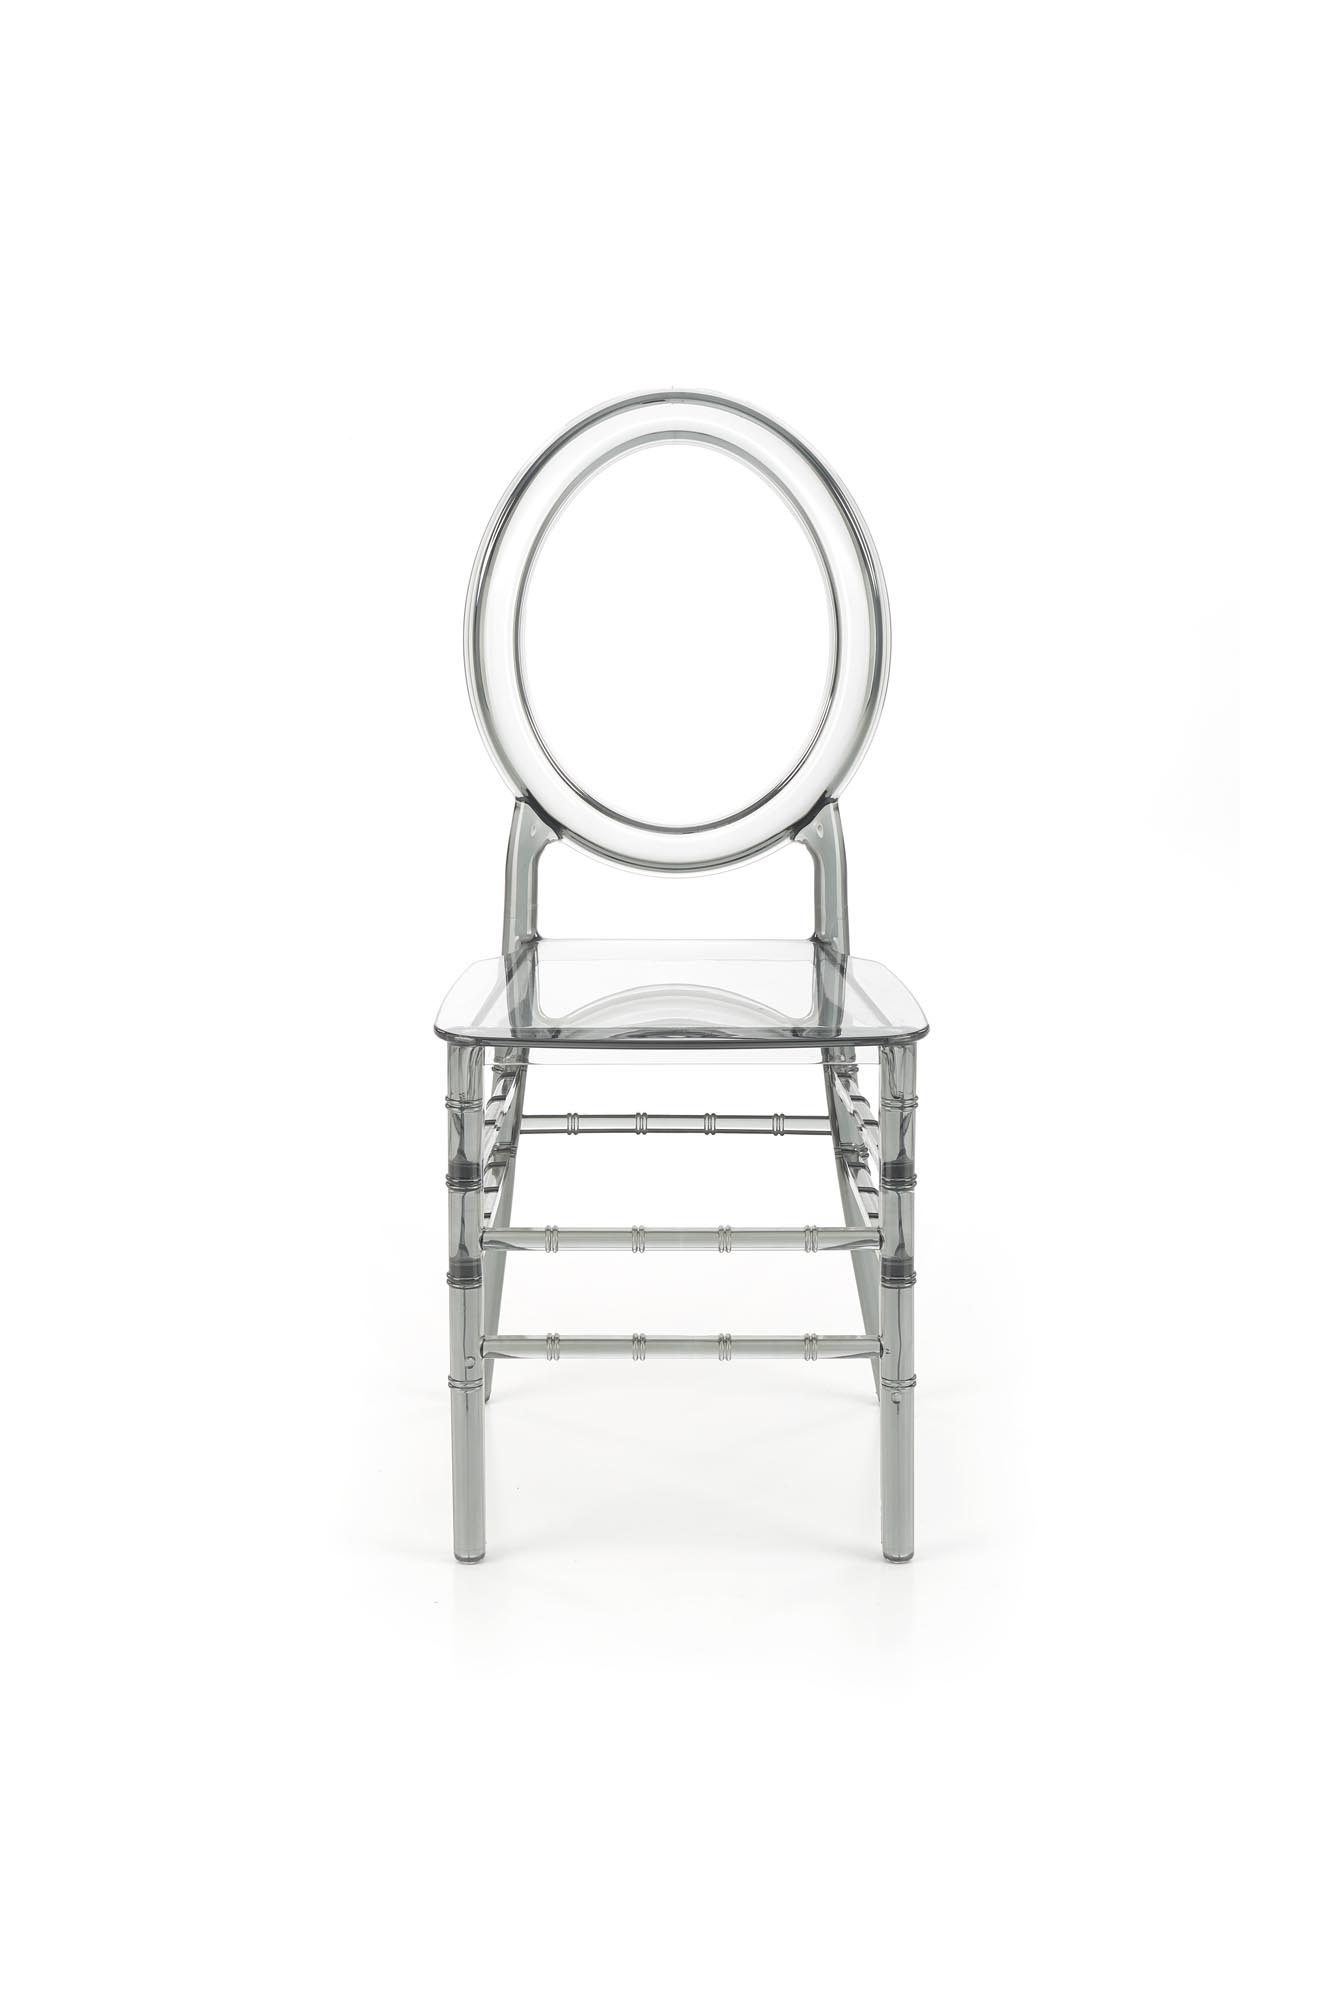 K513 Židle poliweglan, kouřový židle z poliweglanu k513 - kouřový